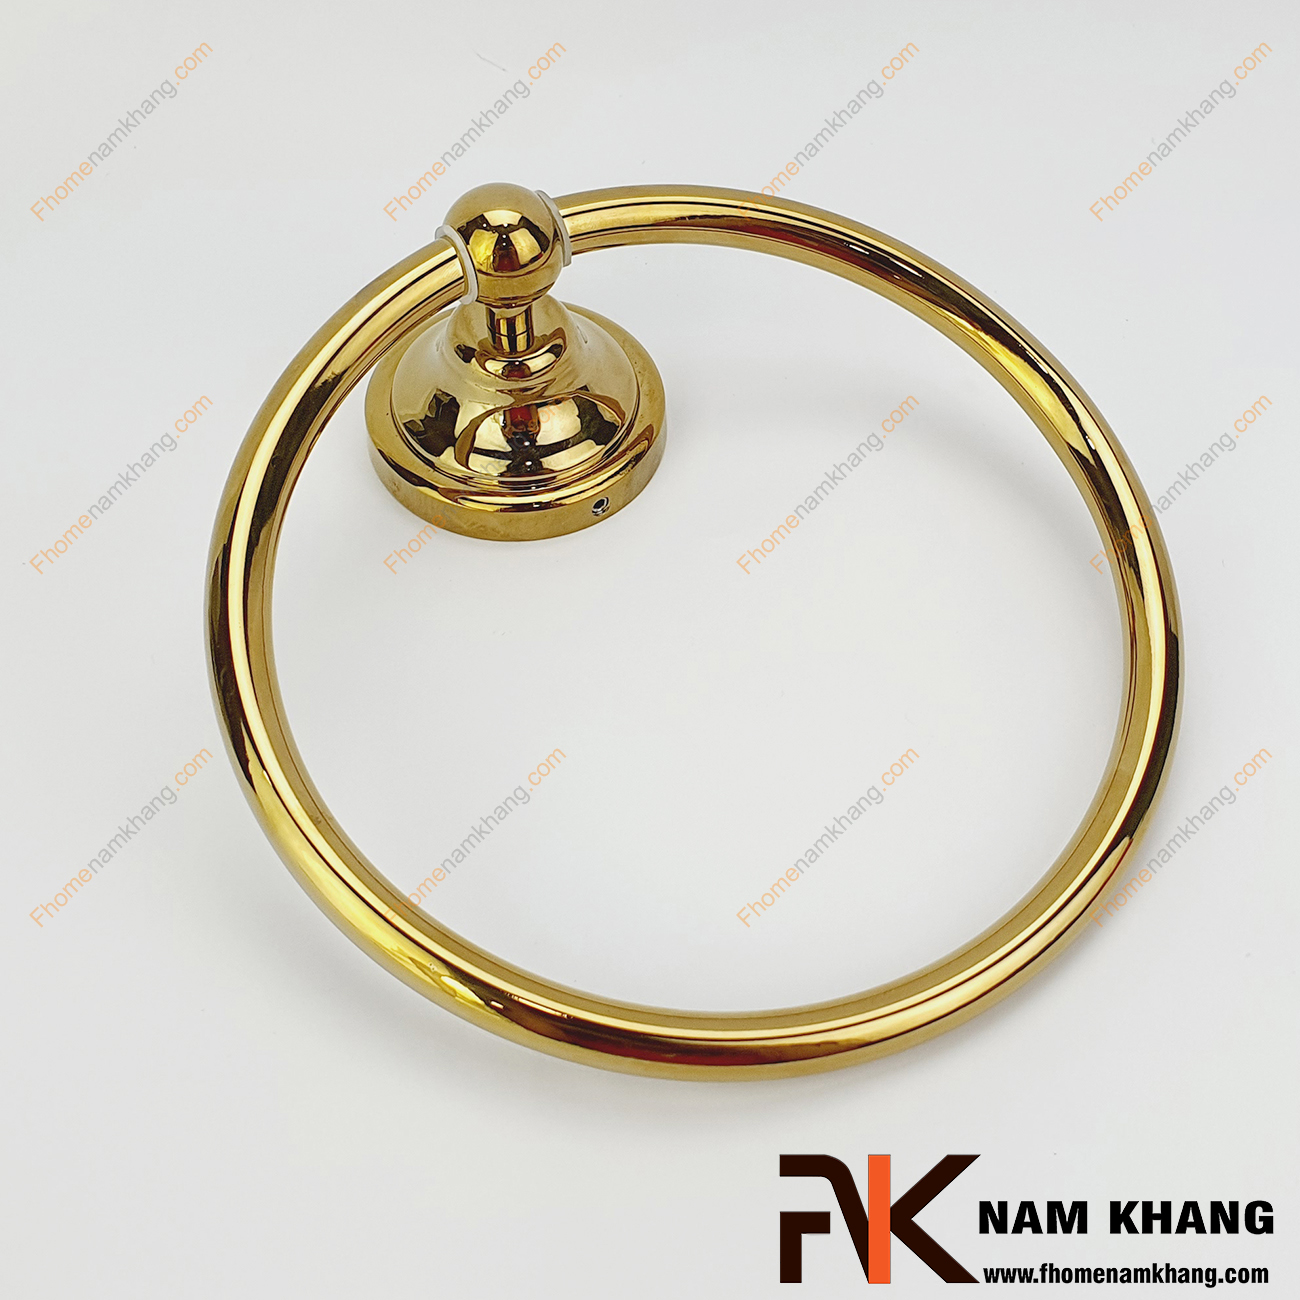 Treo khăn tròn bằng đồng vàng bóng NKTK-002TV là sản phẩm treo khăn cao cấp từ chất liệu đồng cao cấp. Sản phẩm được sử dụng chủ yếu trong hệ thống nhà vệ sinh, phòng tắm phục vụ nhu cầu treo khăn tắm, treo quần áo. 